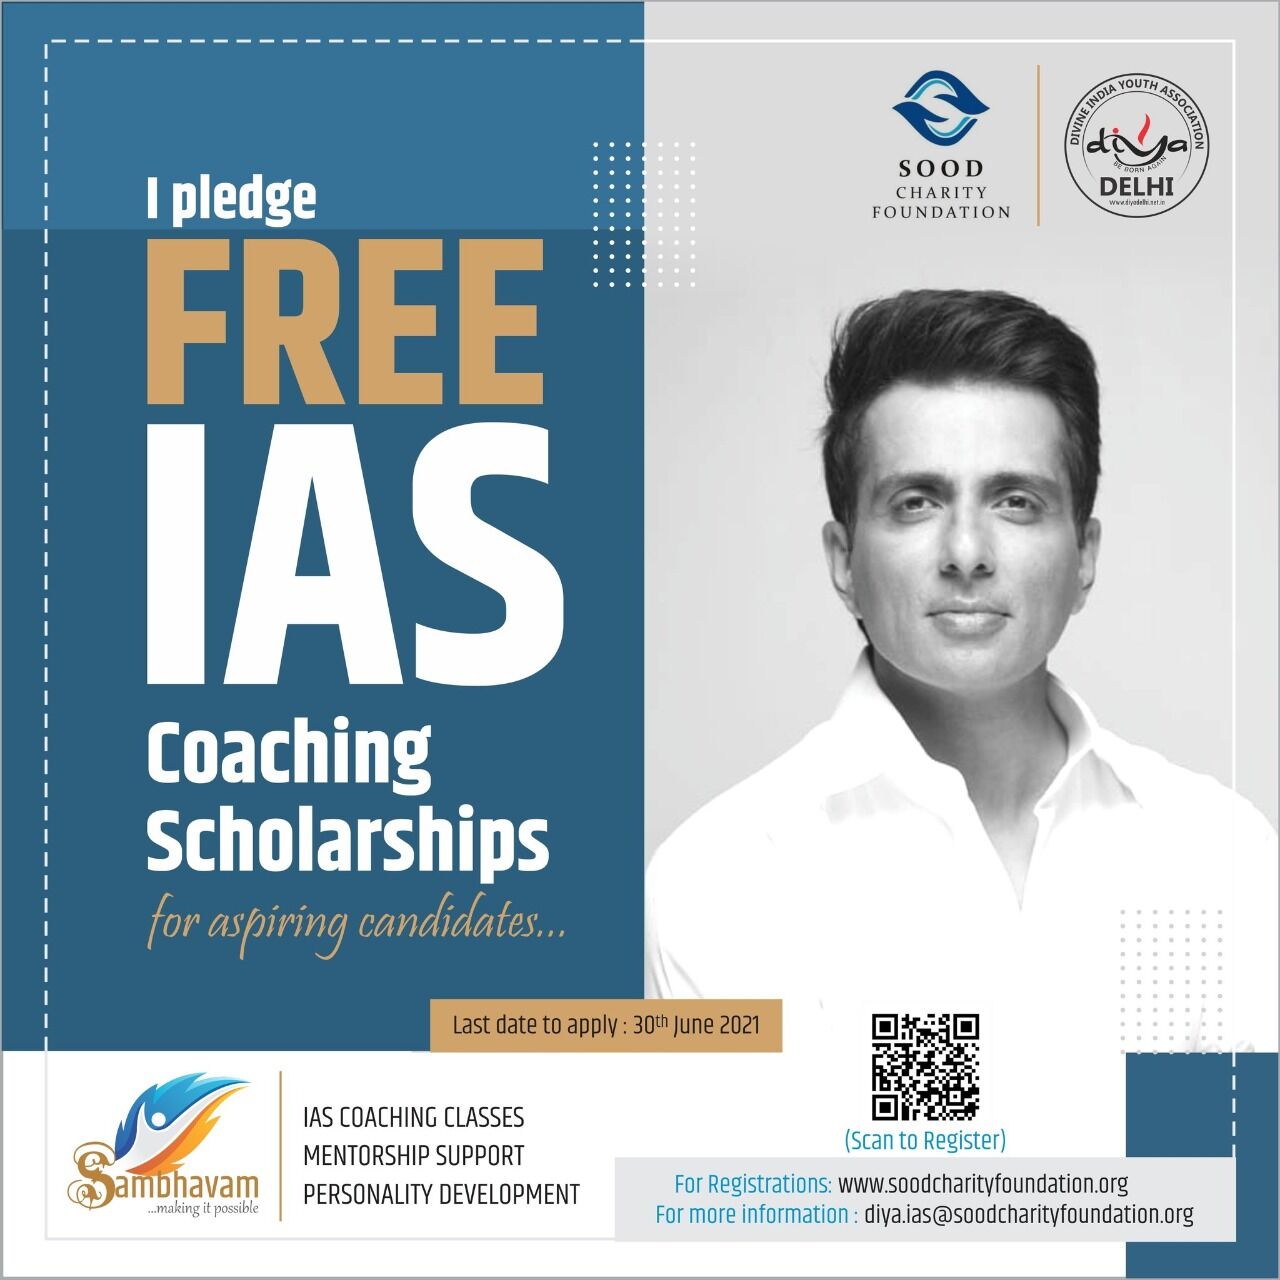 सोनू सूद की पहल- IAS की तैयारी करने वाले छात्रों को मिलेगी FREE कोचिंग